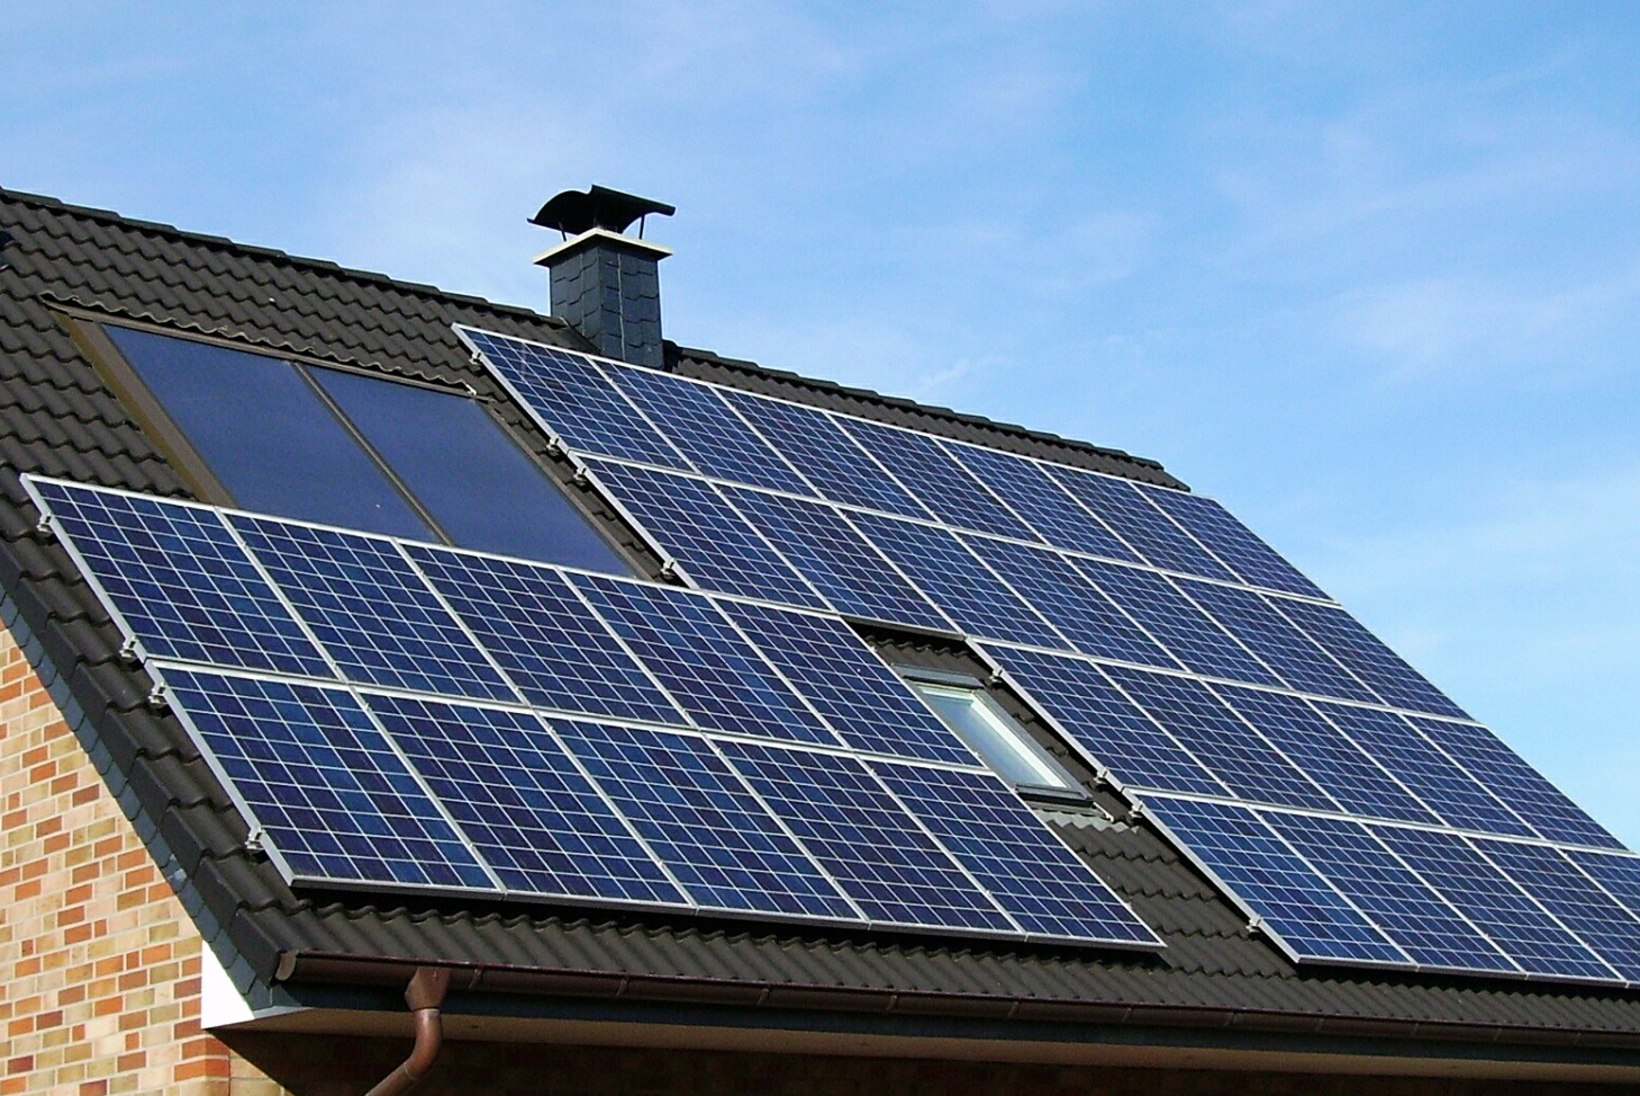 Nõu ja soovitused, kuidas päikesepaneelidega kodus elektrit toota